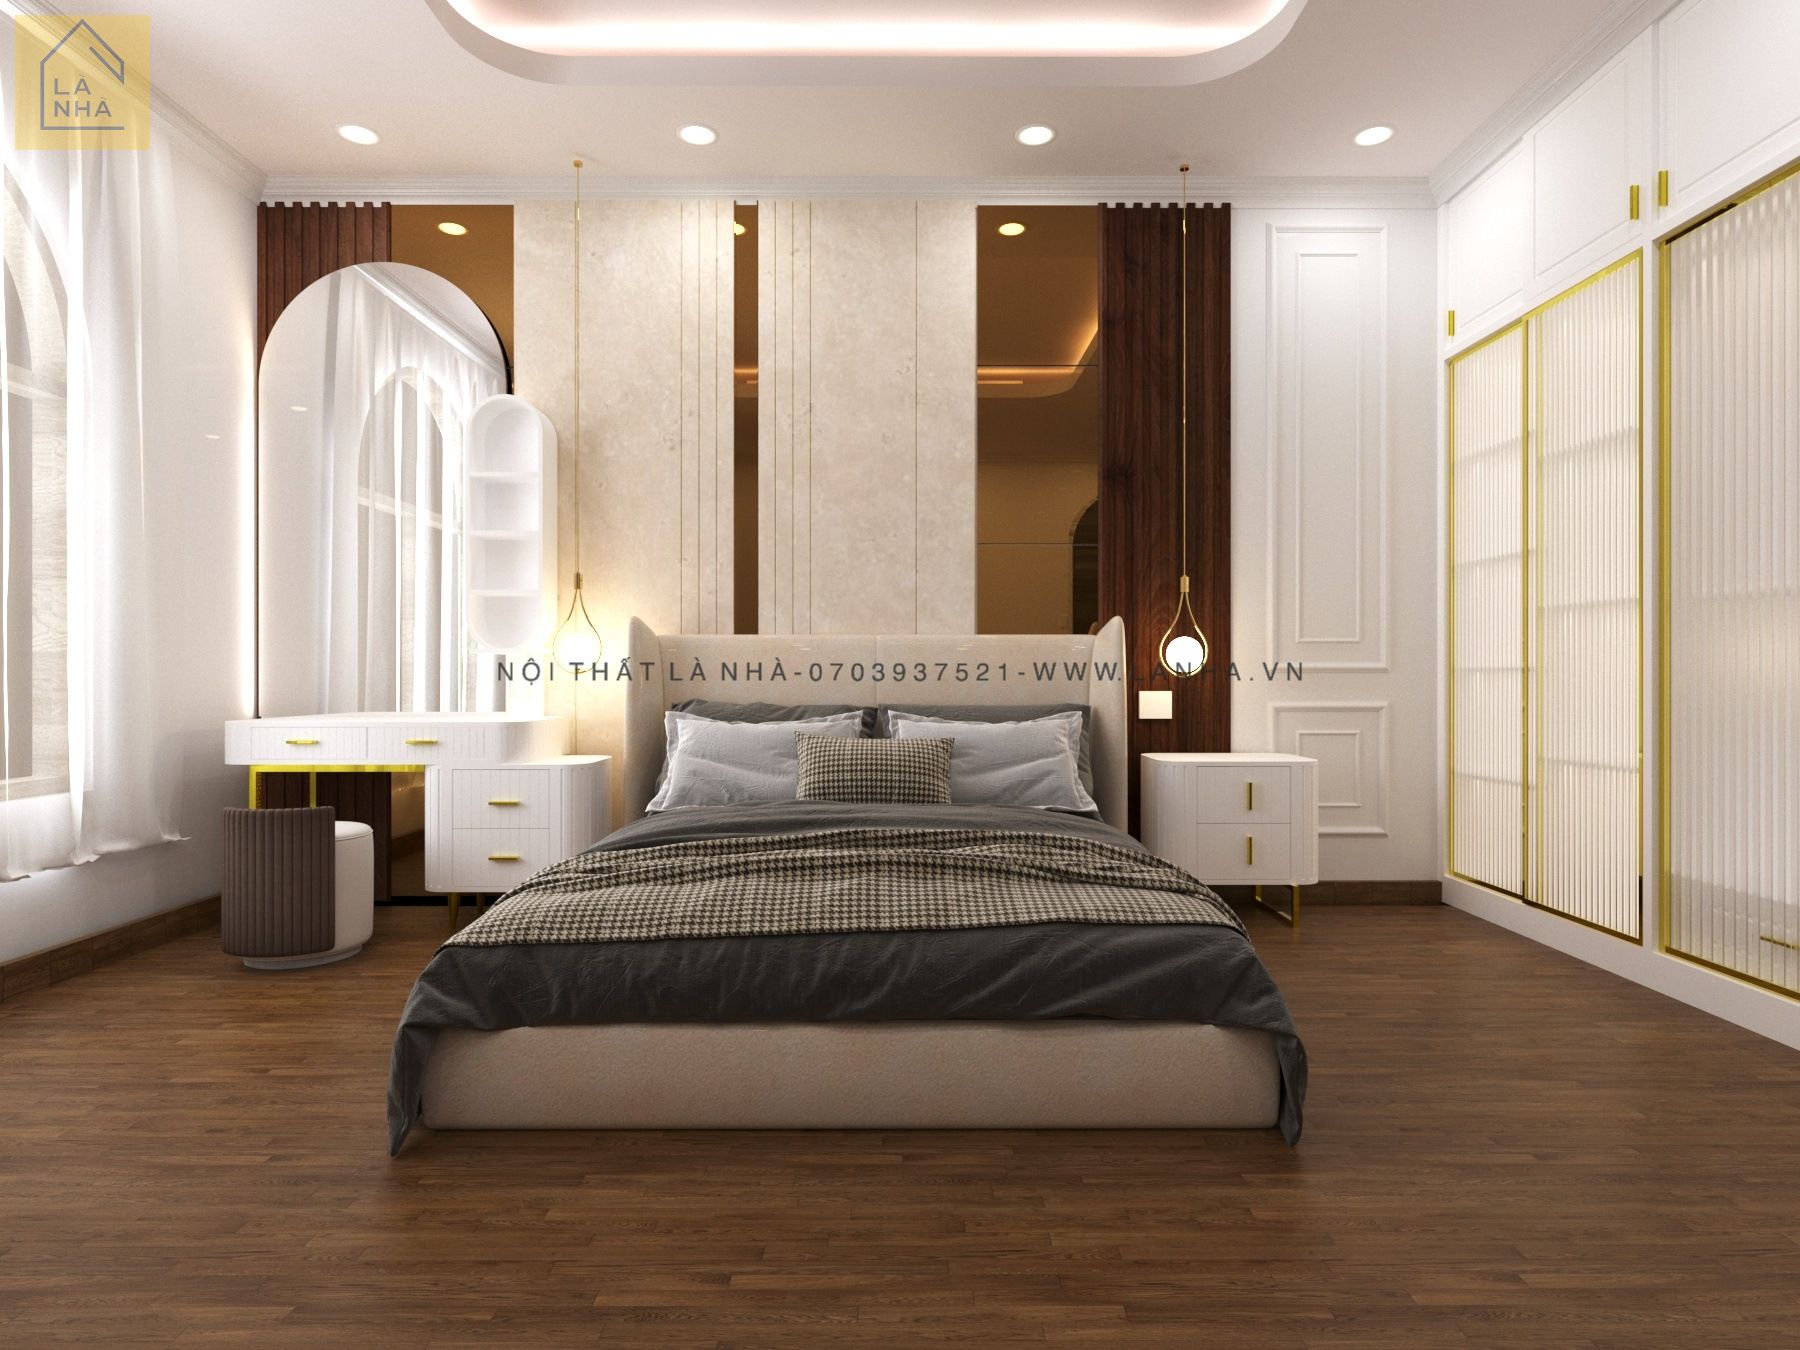 Tham khảo các xu hướng thiết kế nội thất phòng ngủ được ưa chuộng nhất